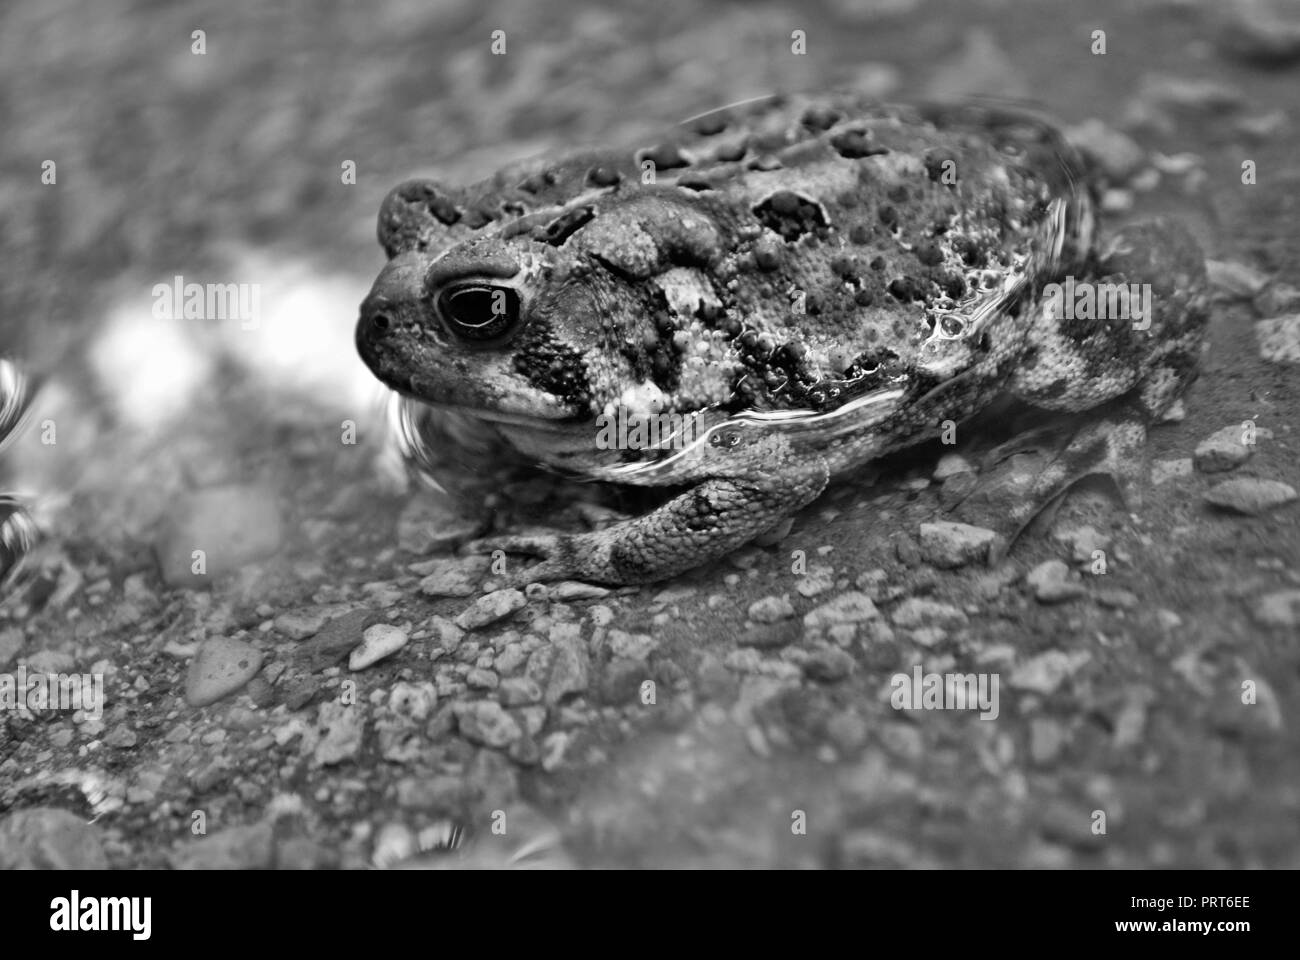 Vue rapprochée d'une grenouille dans l'eau Banque D'Images